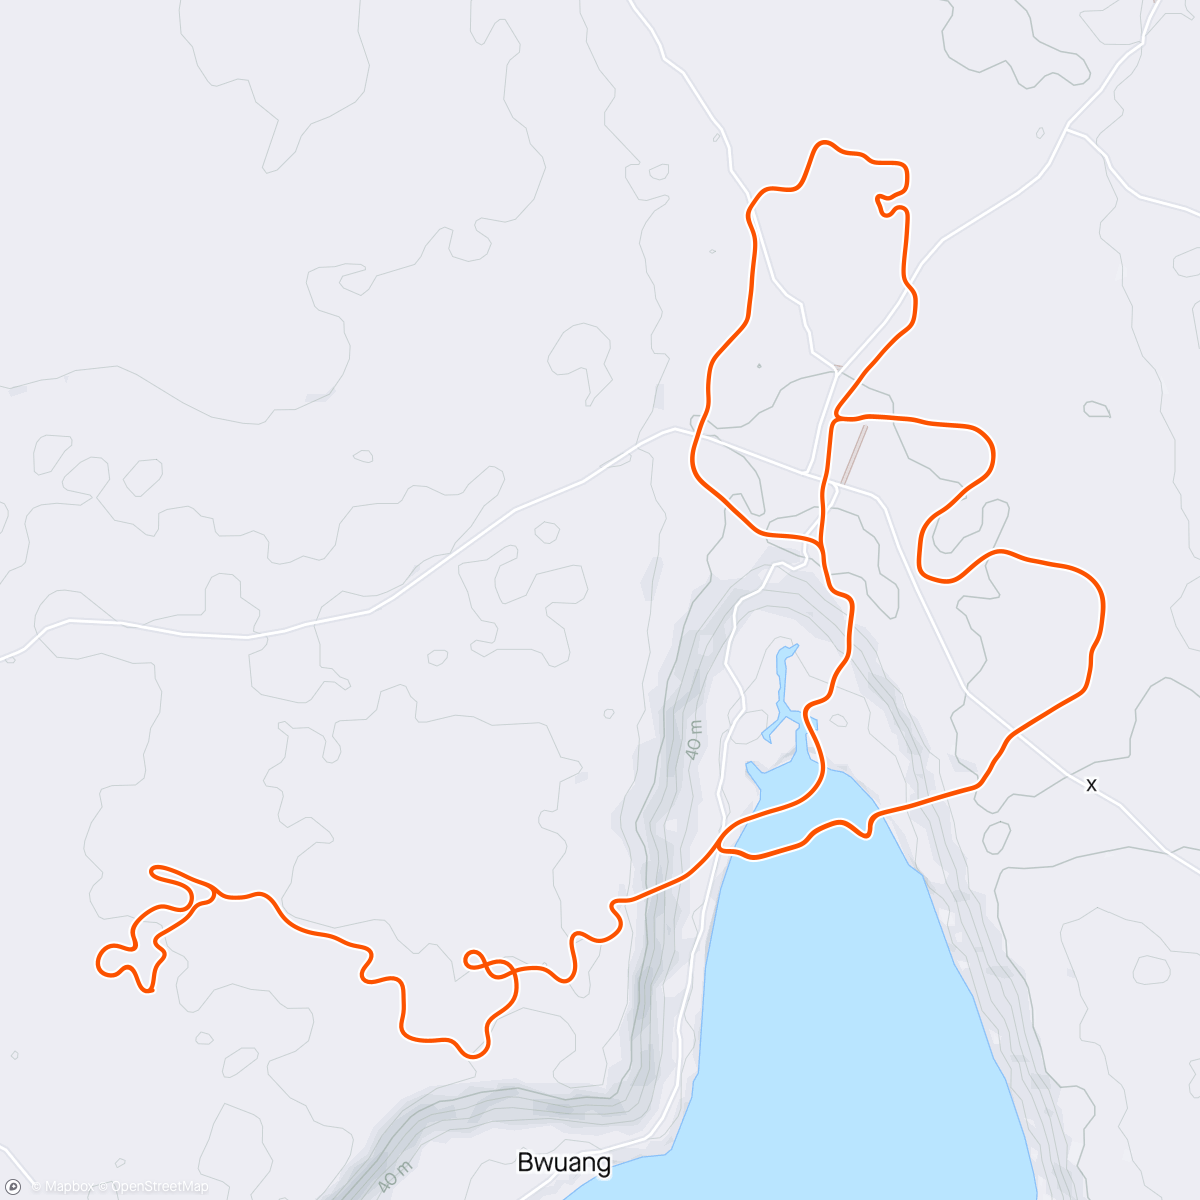 アクティビティ「Zwift - Group Ride: Infinity - Beginners Sub 1.5 'Cool As Ice Ride Out' (D) on Electric Loop in Makuri Islands」の地図